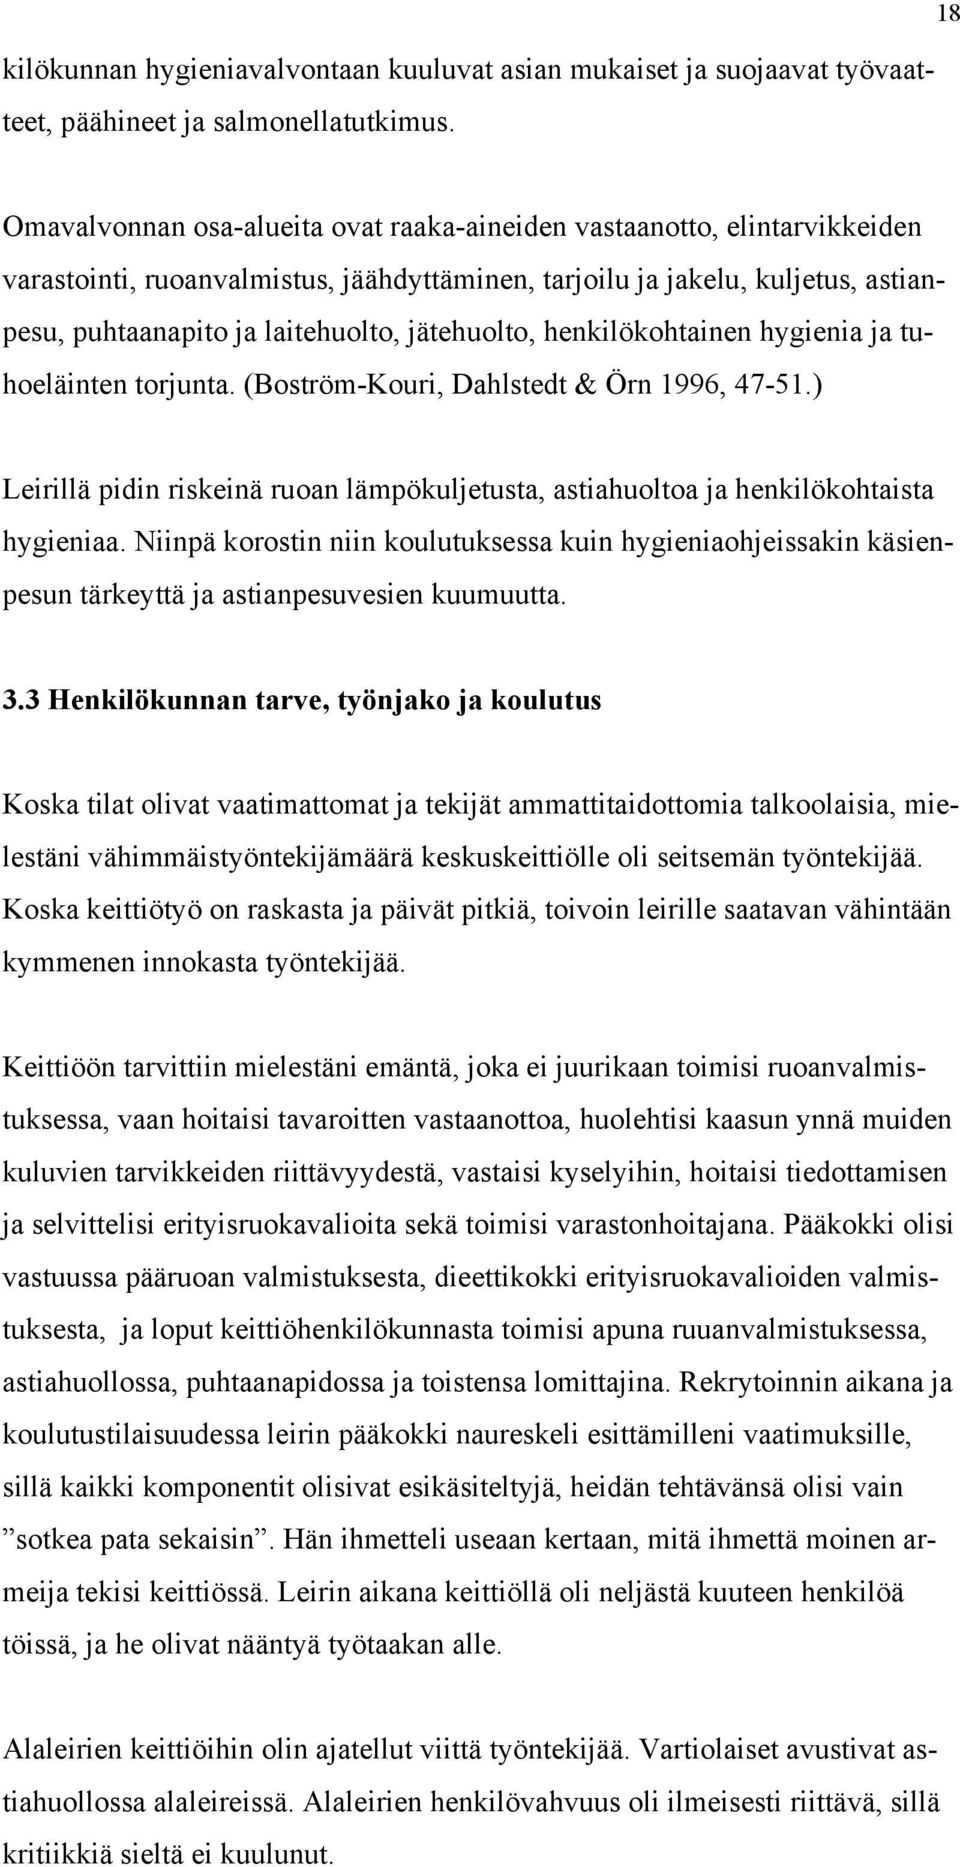 jätehuolto, henkilökohtainen hygienia ja tuhoeläinten torjunta. (Boström-Kouri, Dahlstedt & Örn 1996, 47-51.) Leirillä pidin riskeinä ruoan lämpökuljetusta, astiahuoltoa ja henkilökohtaista hygieniaa.